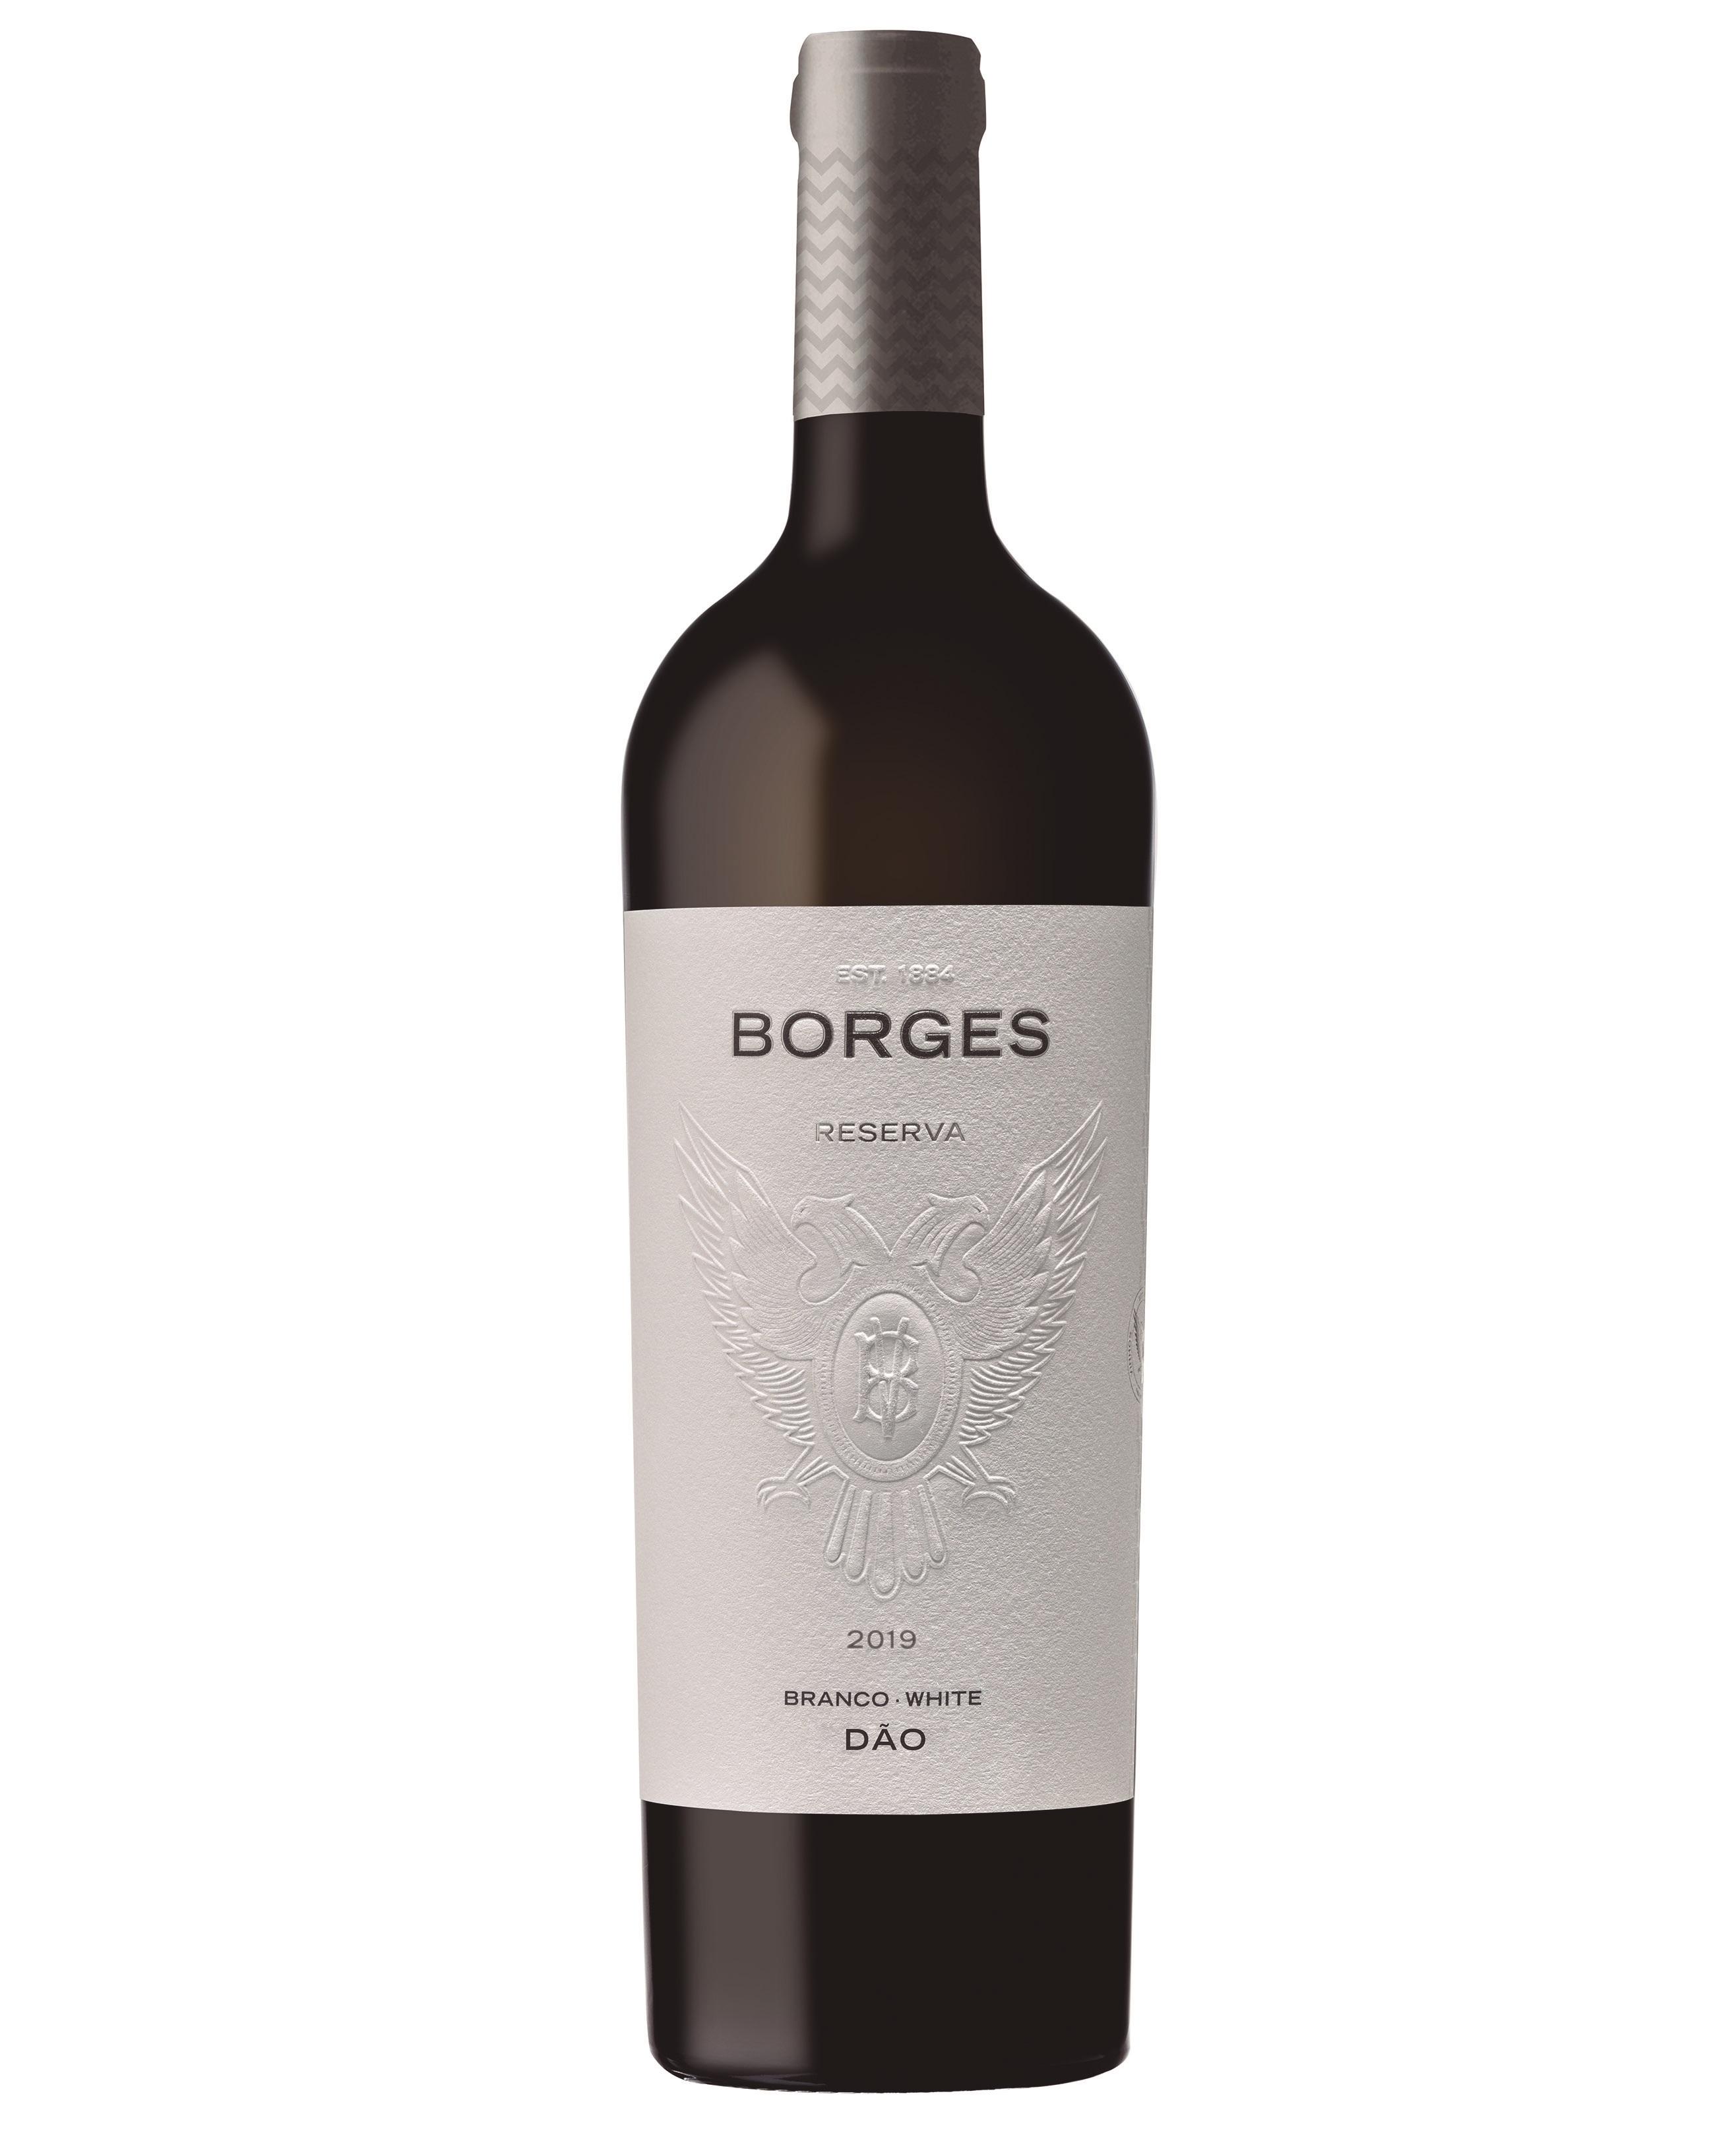 Borges Reserva Dão 2019 (28,00€ / litro)